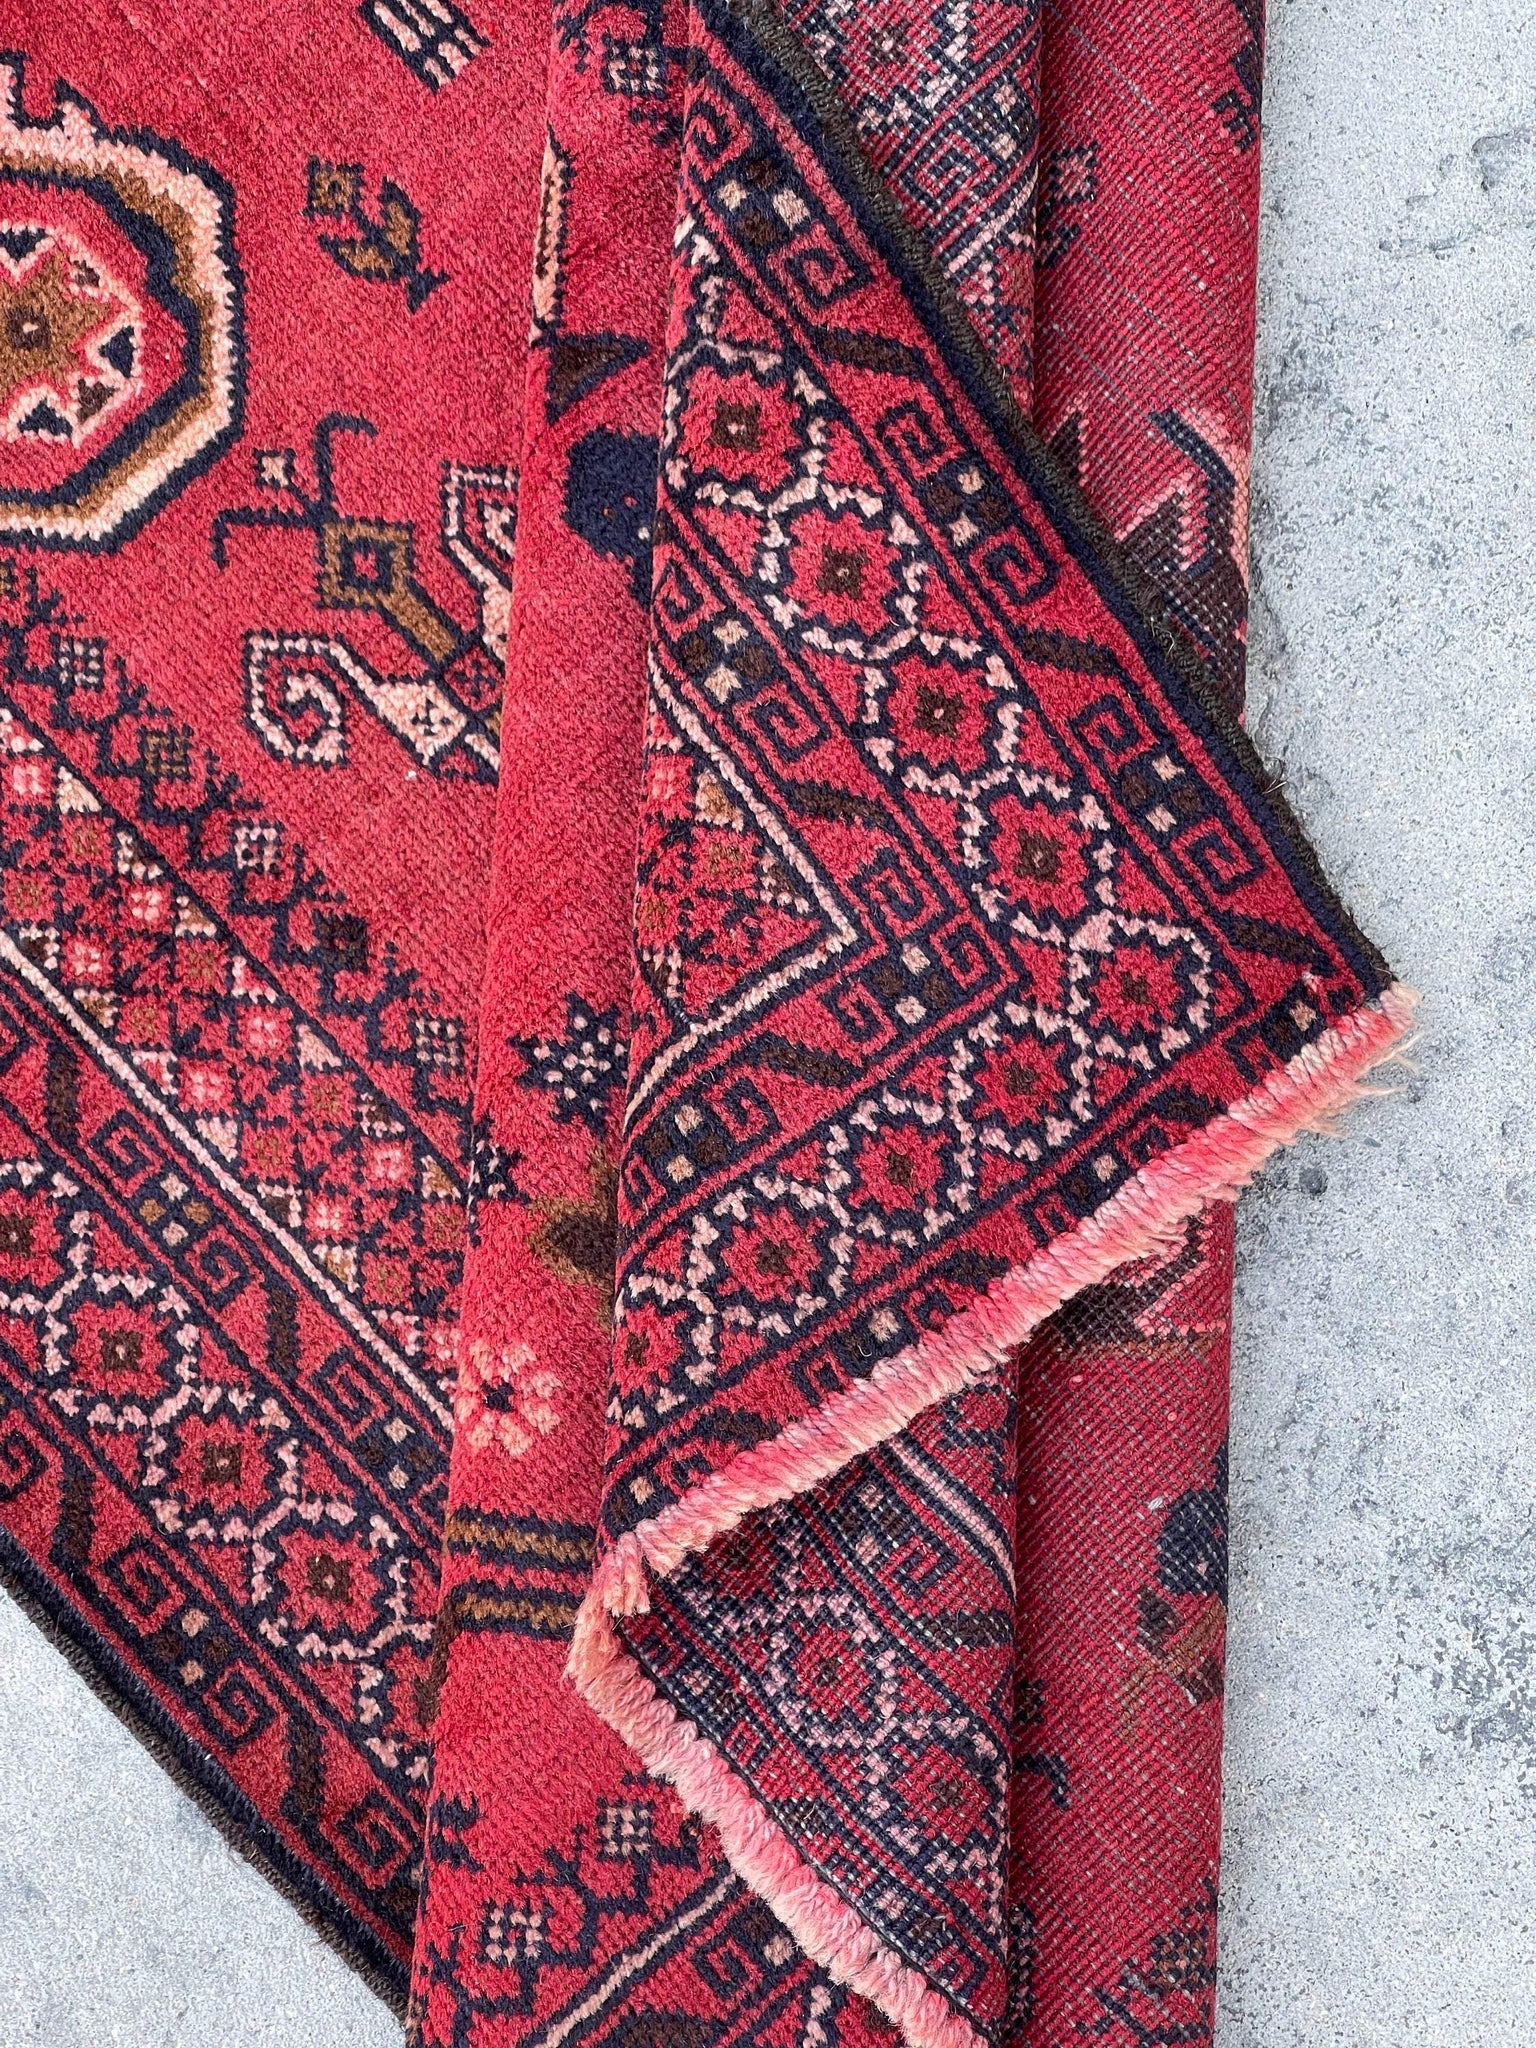 3x5 (90x150) Handmade Vintage Afghan Rug | Red Pink Salmon Brown Indigo | Nomadic Baluch Boho Bohemian Tribal Turkish Moroccan Wool